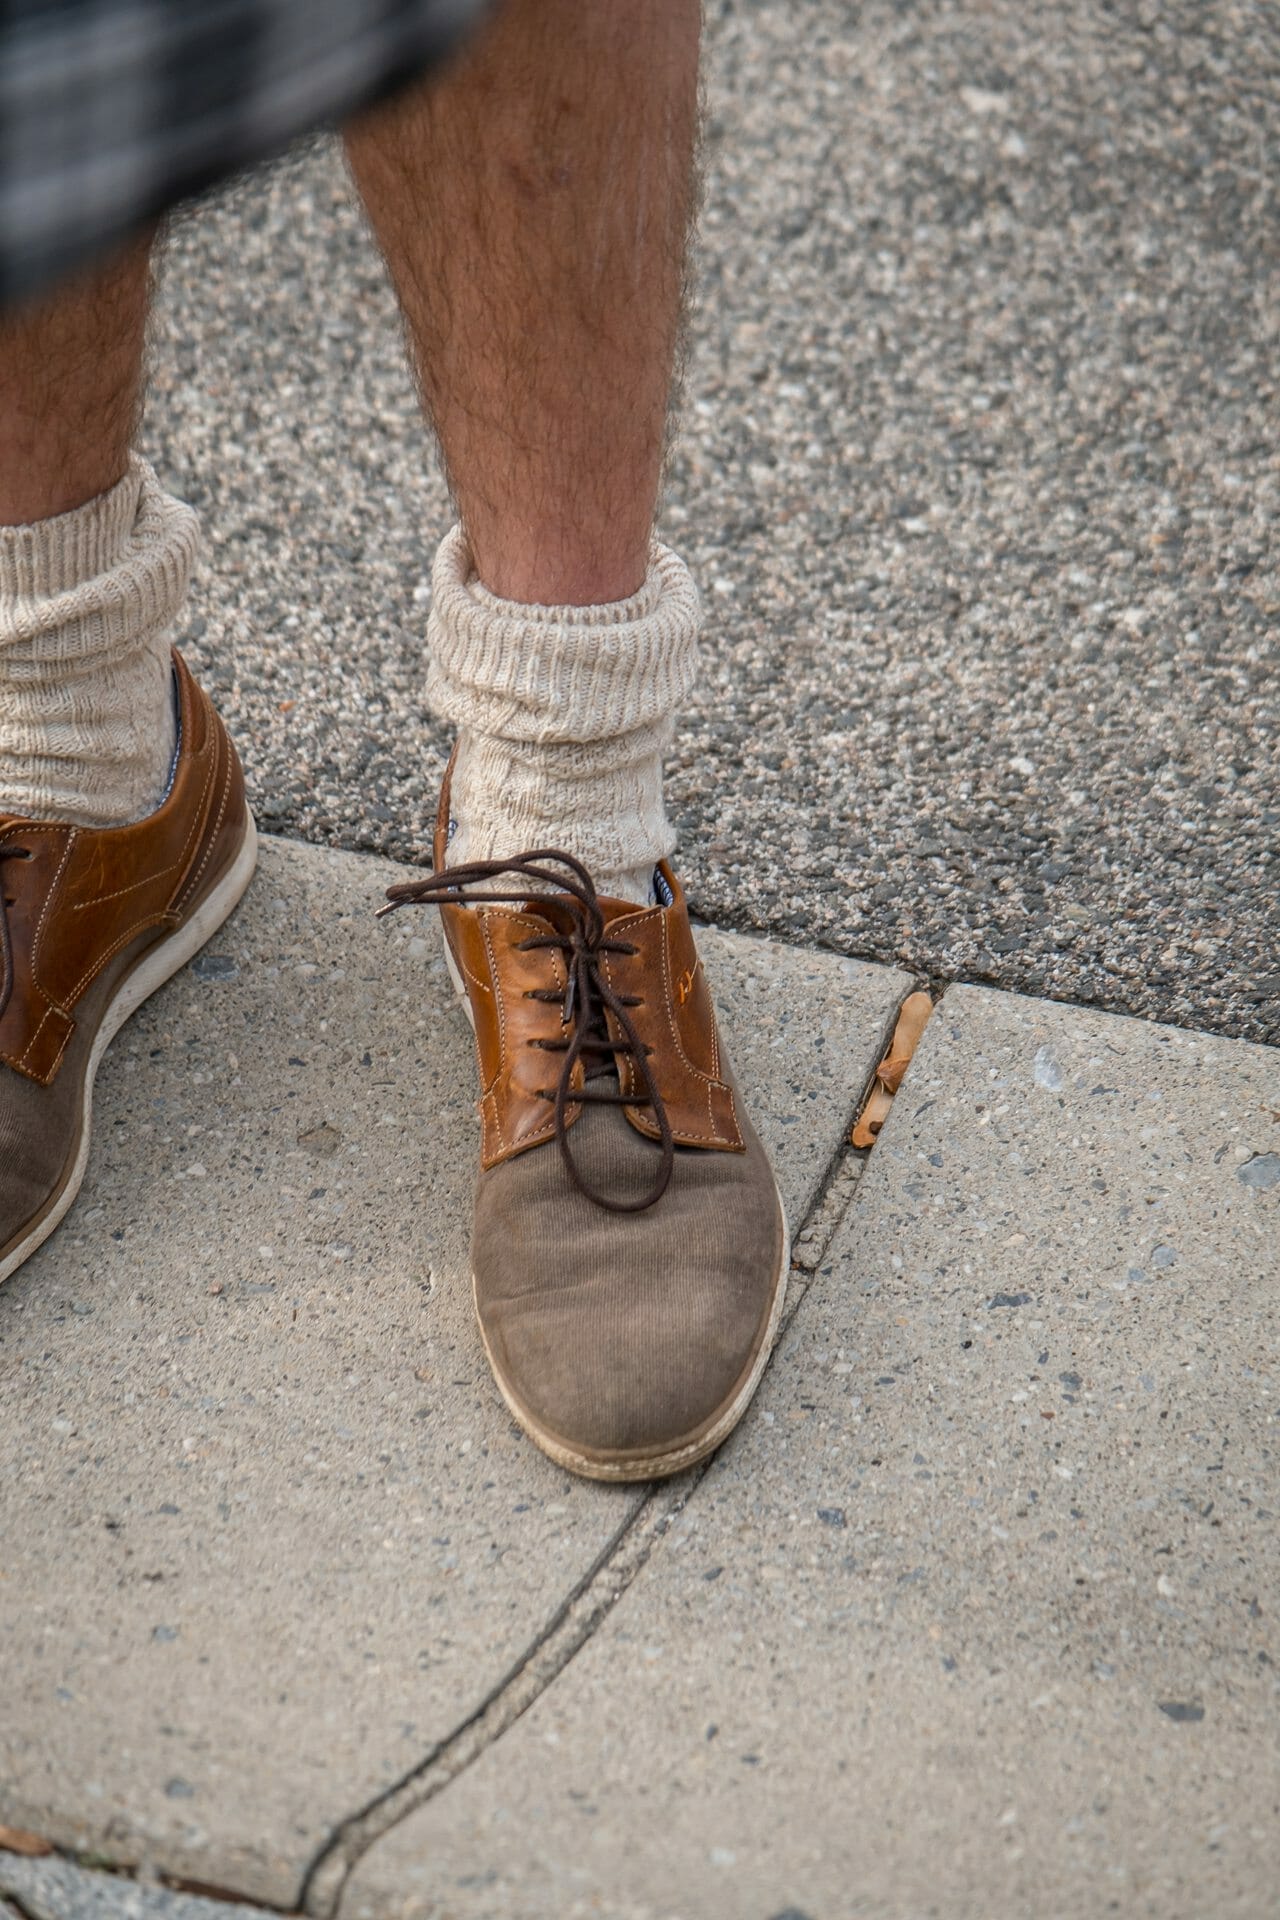 Ein Mann trägt ein Paar braune Schuhe und Socken.